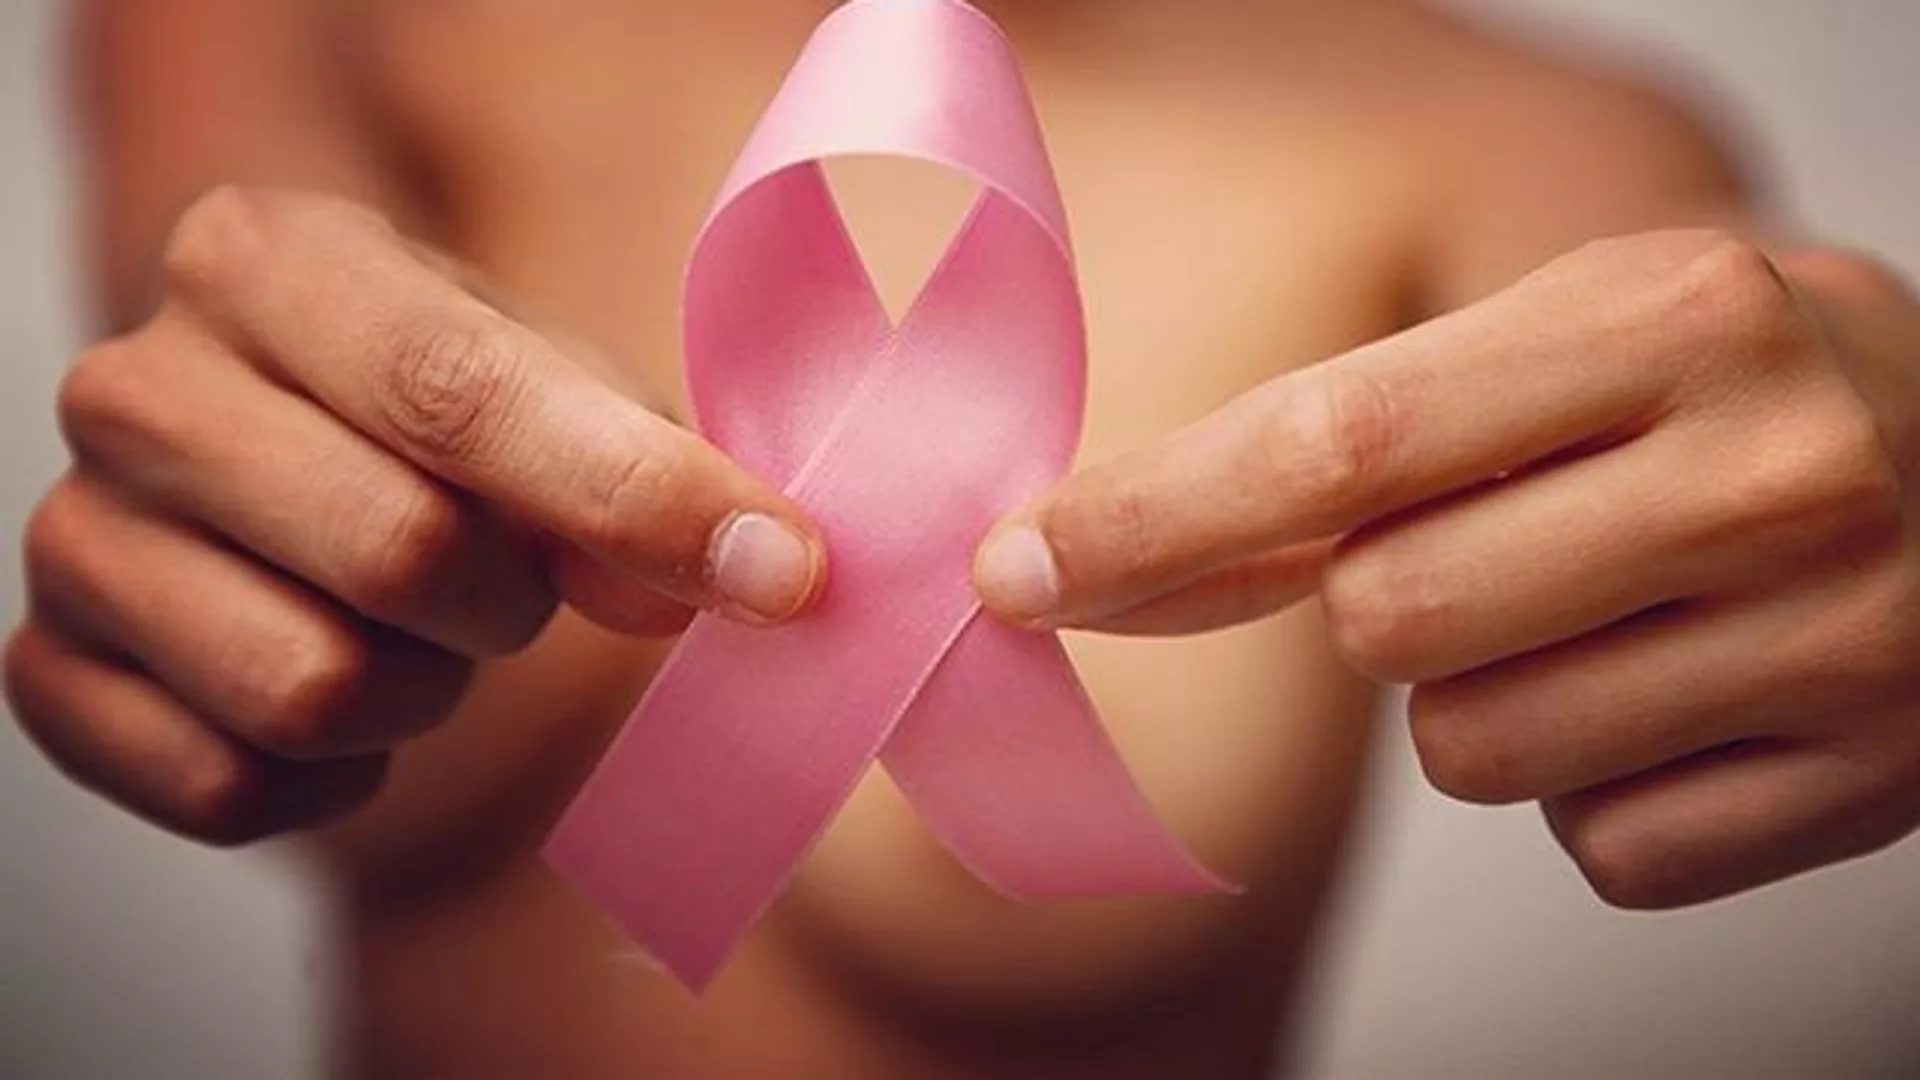  Científicos descubren una forma de diagnosticar el cáncer de mama analizando la leche materna